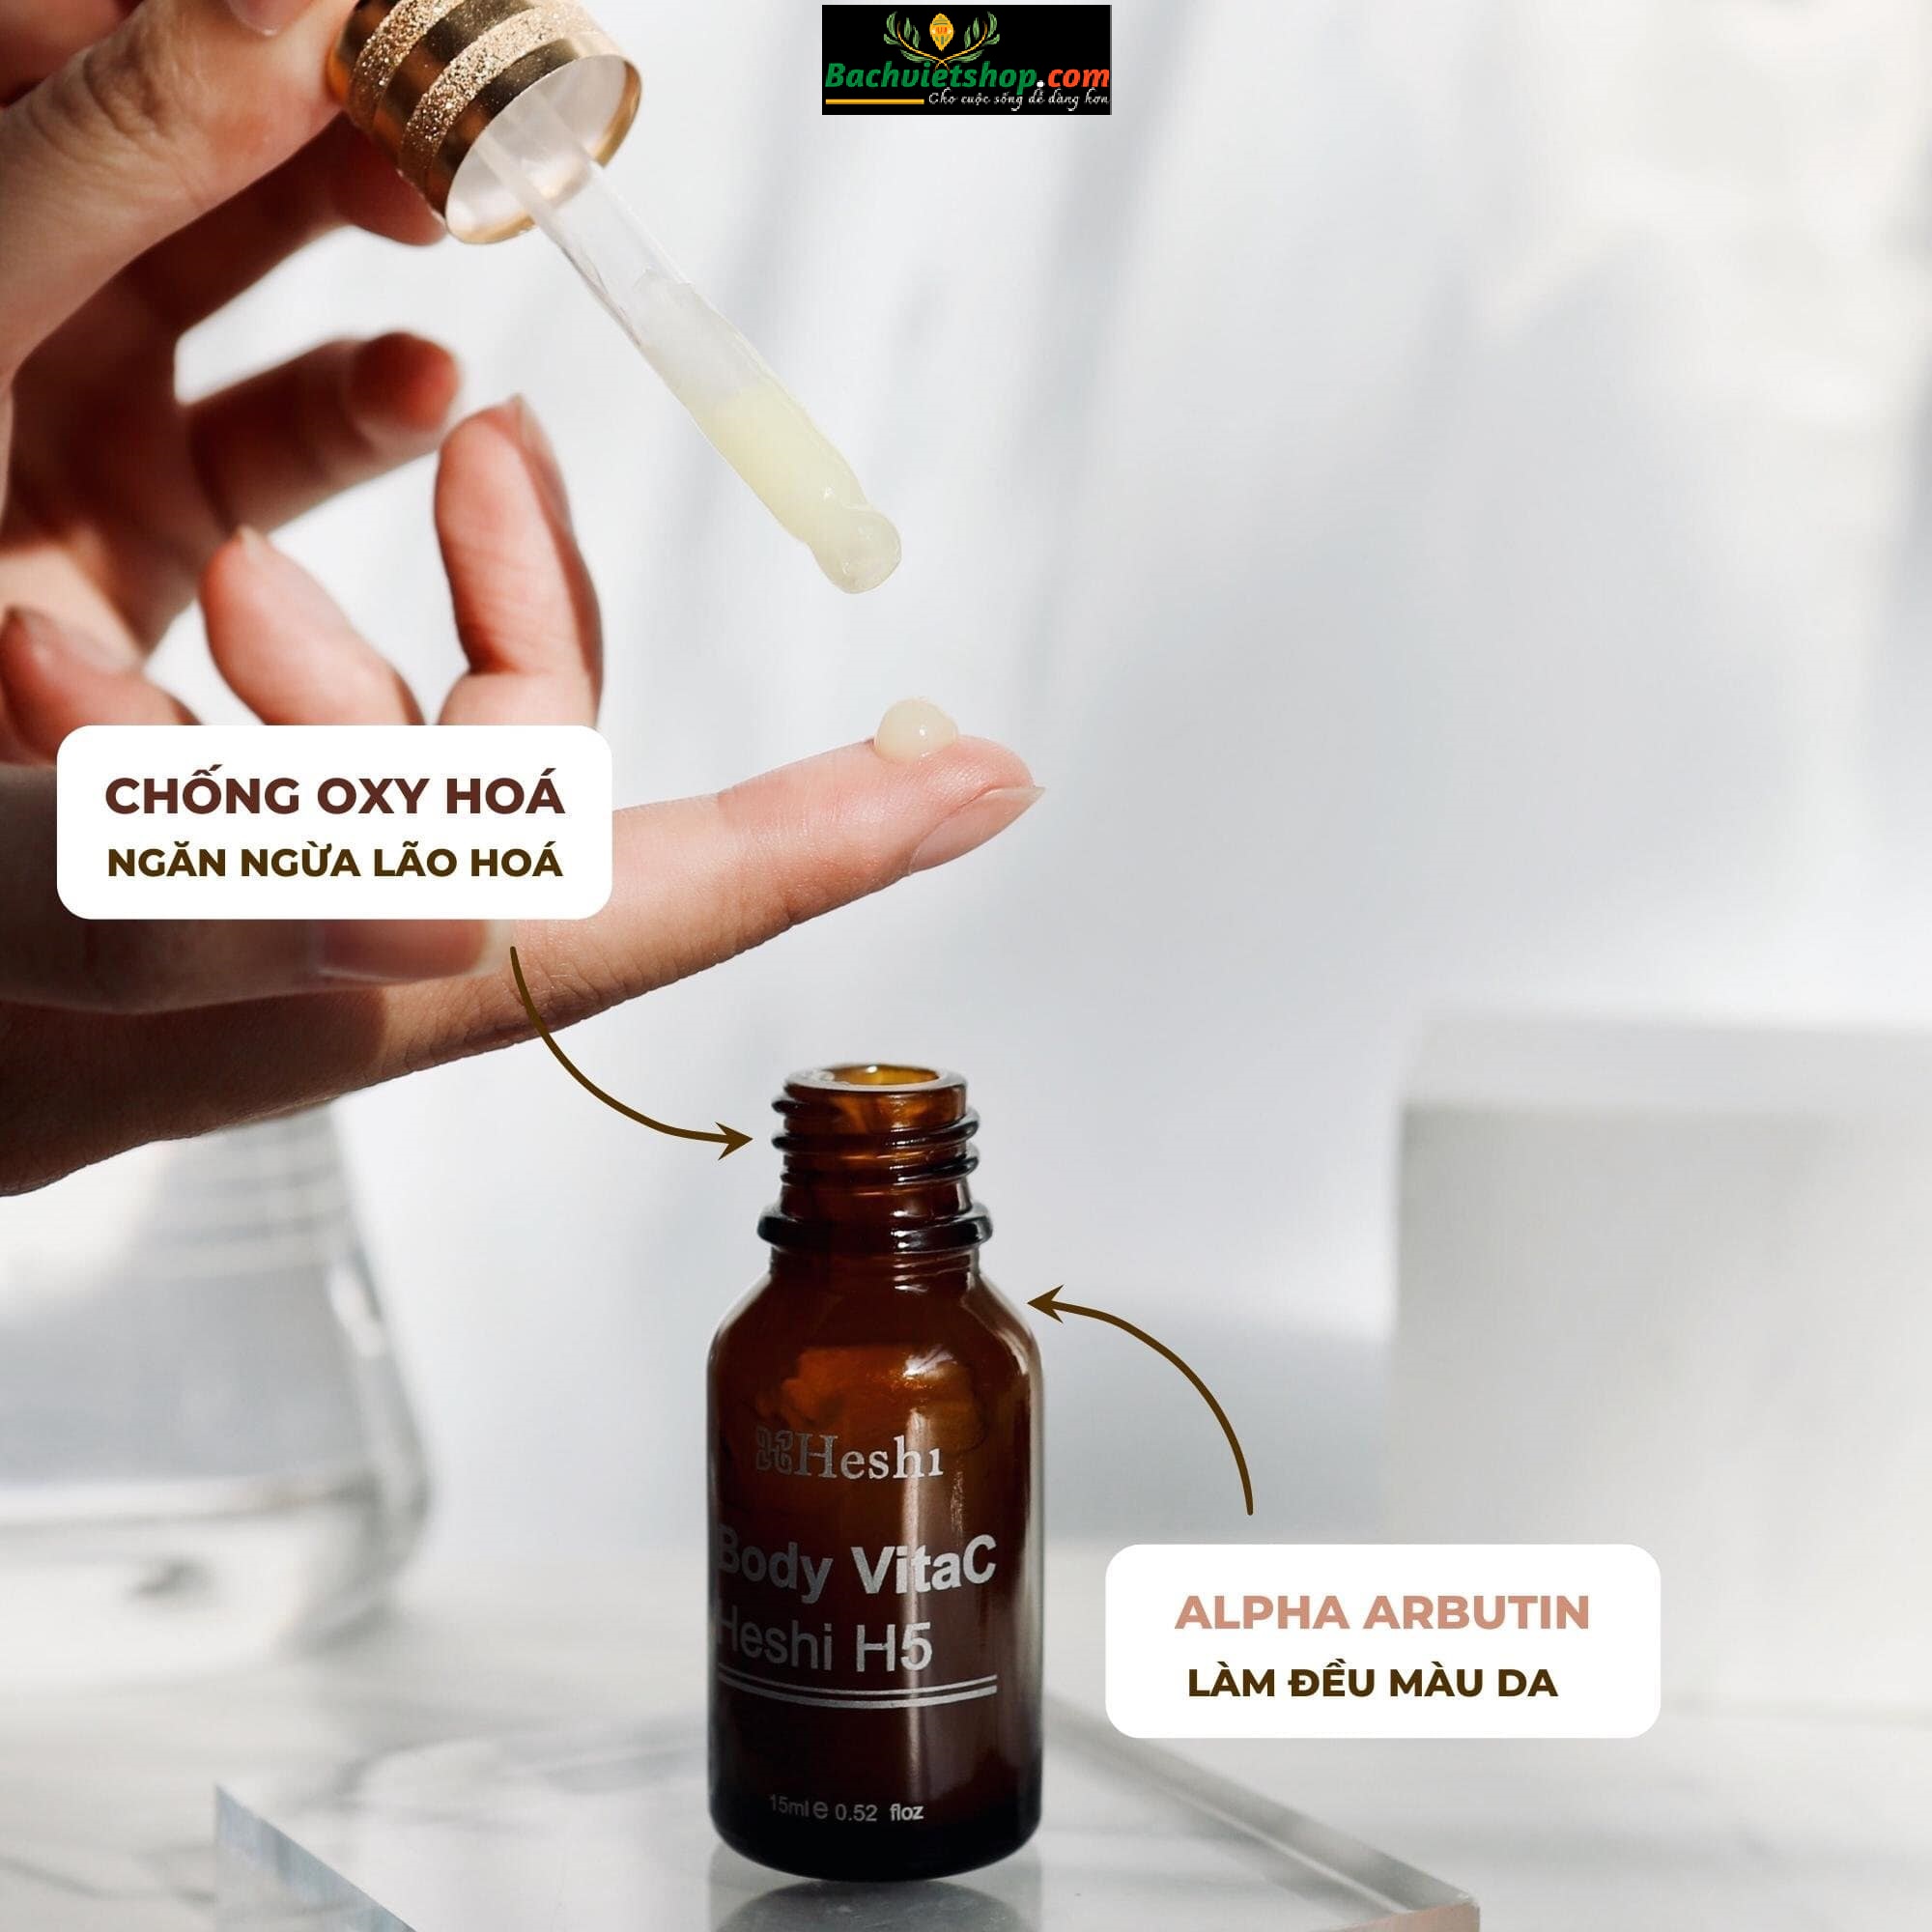 Serum Body VitaC Heshi H5 - Cam kết hiệu quả nhanh, không gây kích ứng, sử dụng được cho mọi làn da